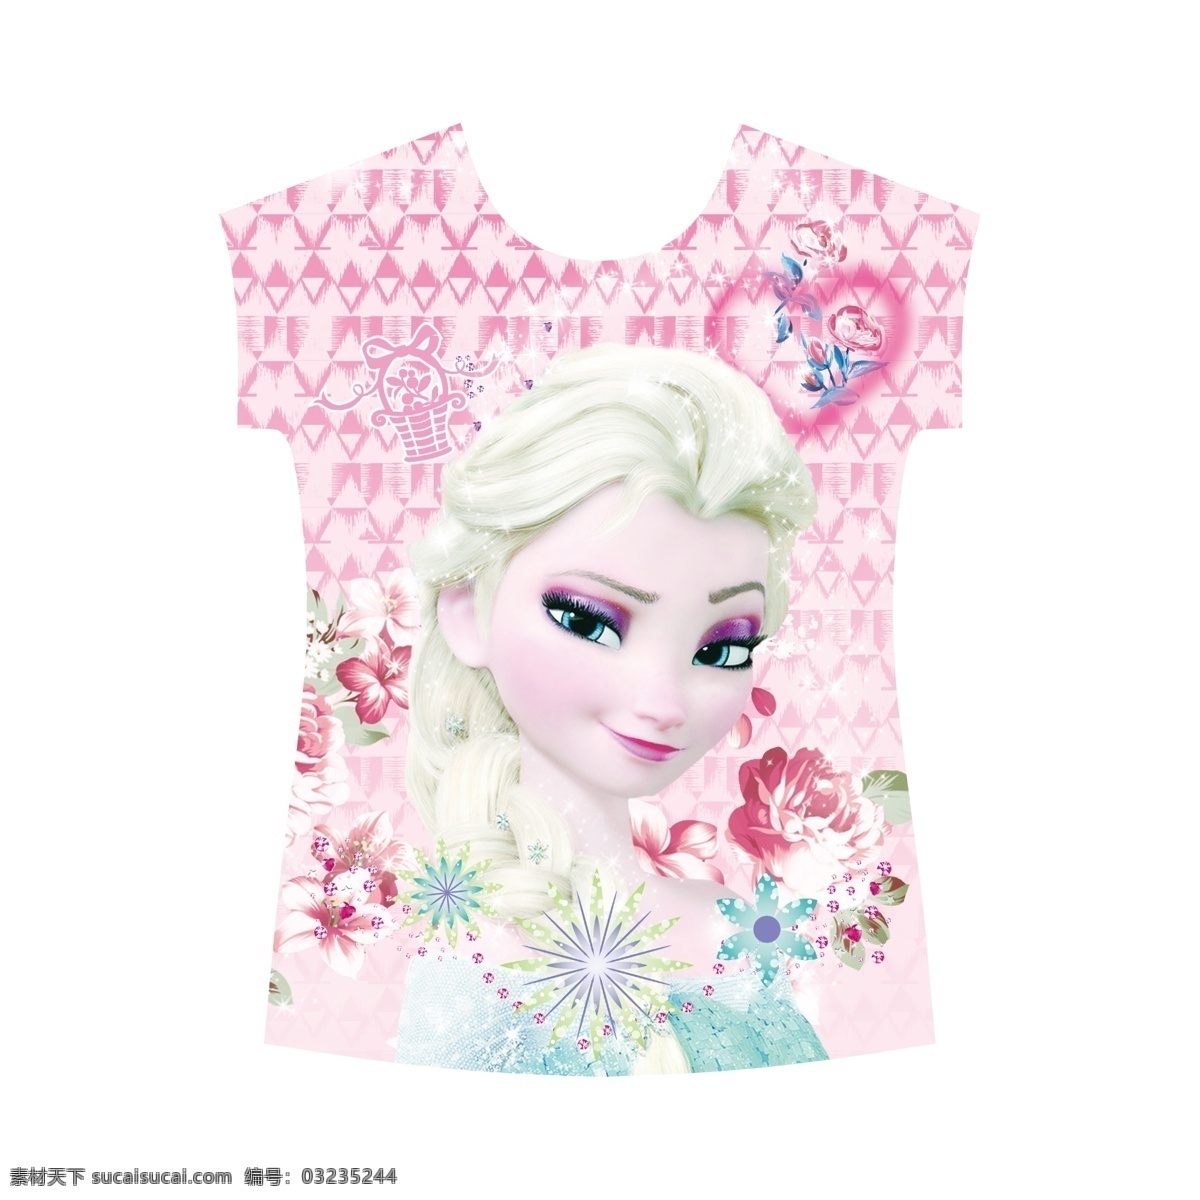 冰雪公主 服装上衣 花纹 背景 衣服 t恤女孩 花朵 生活百科 生活用品